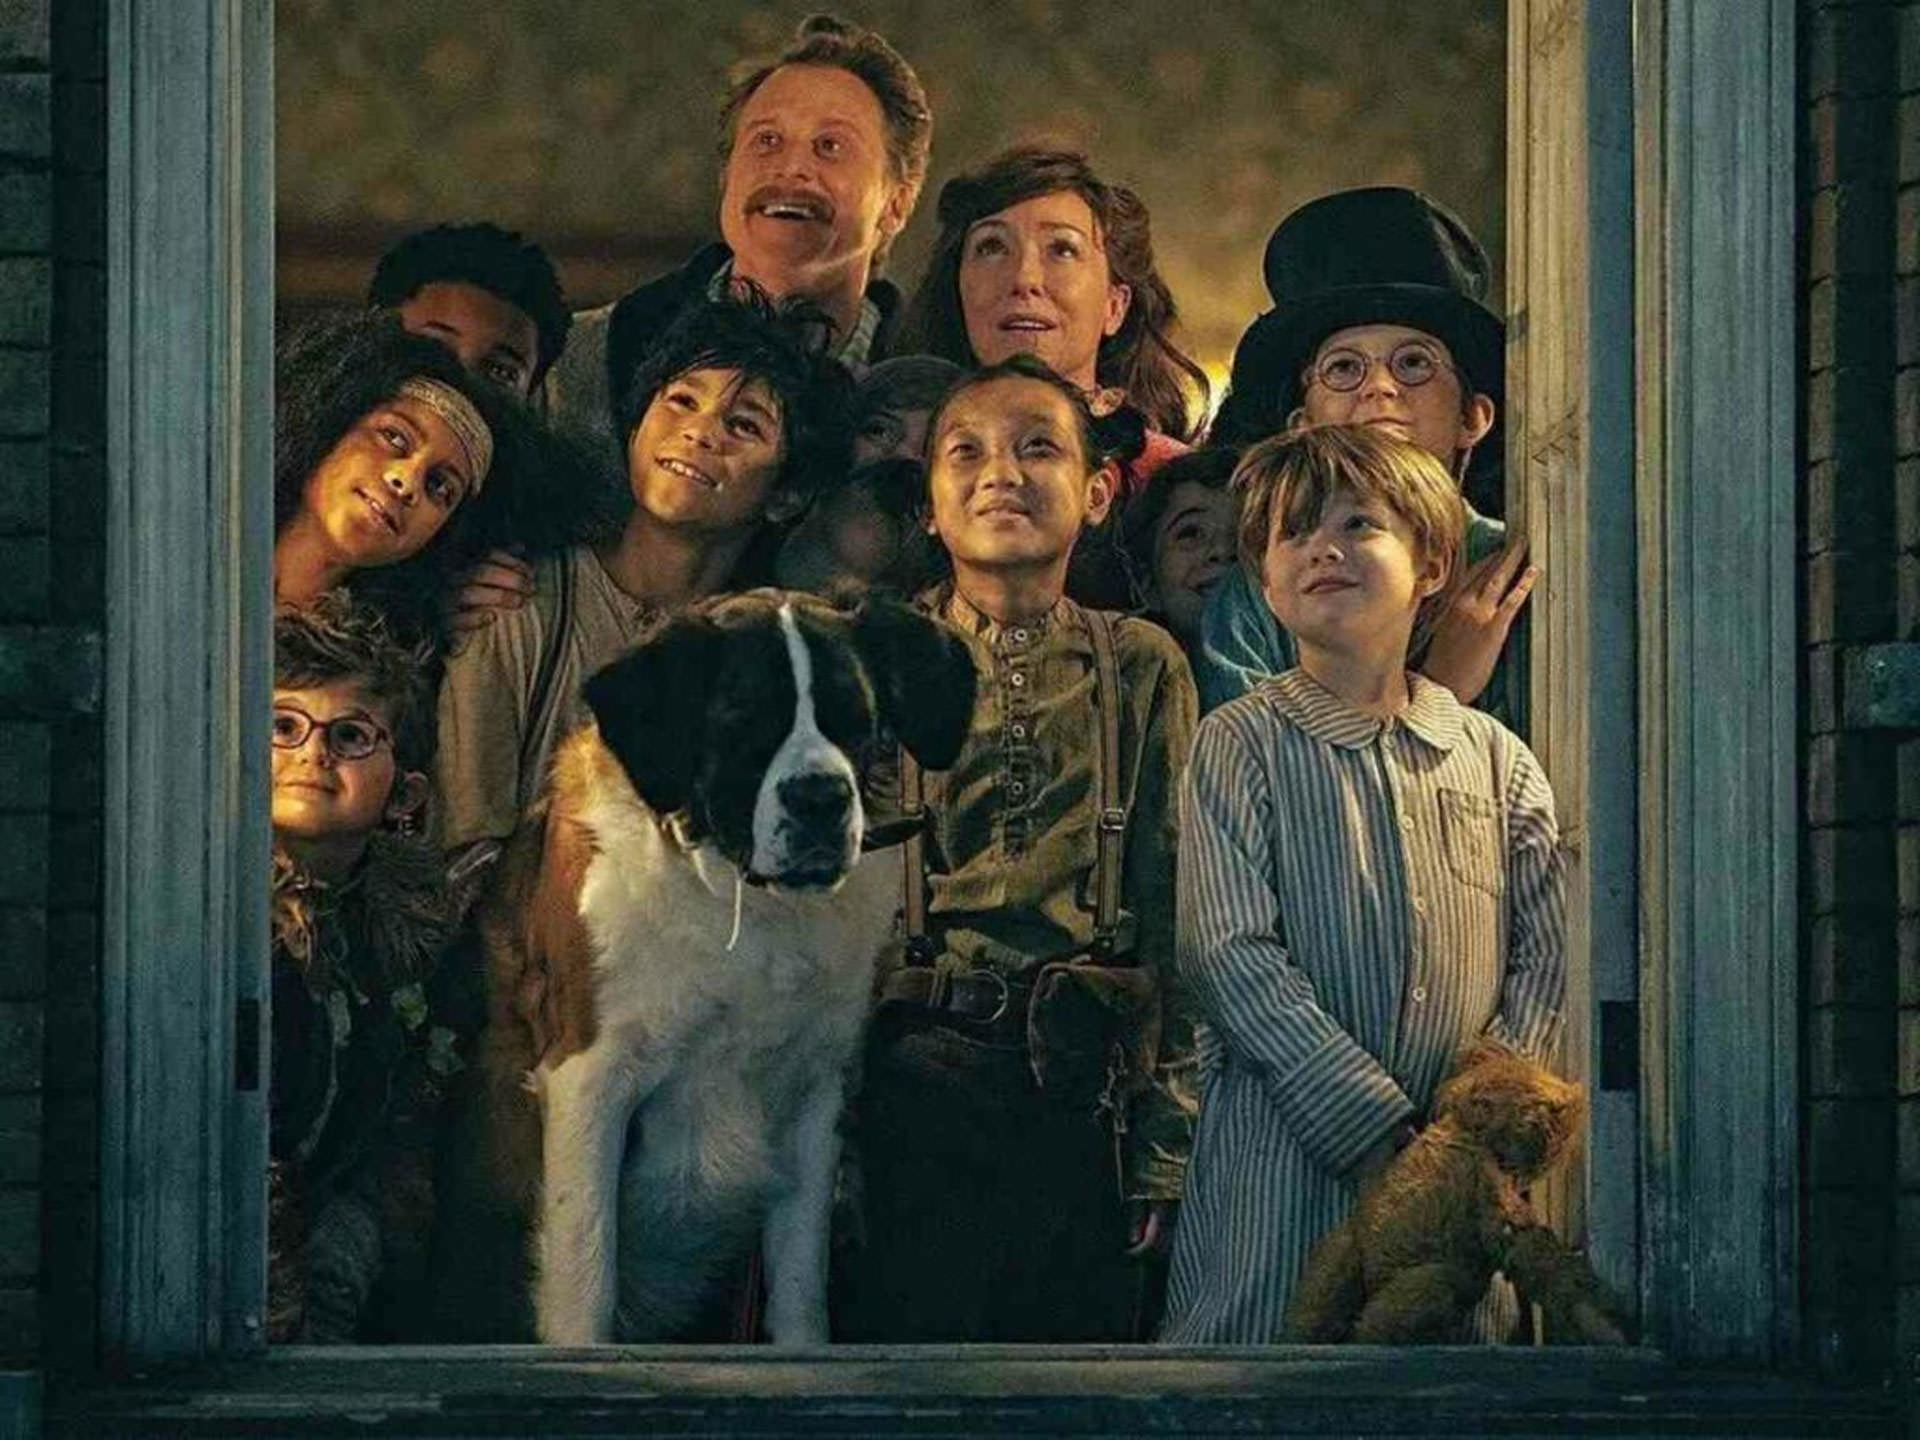 یک خانواده و یک سگ در حال تماشای آسمان بیرون از یک پنجره در نمایی از فیلم پیتر پن و وندی به کارگردانی دیوید لاوری